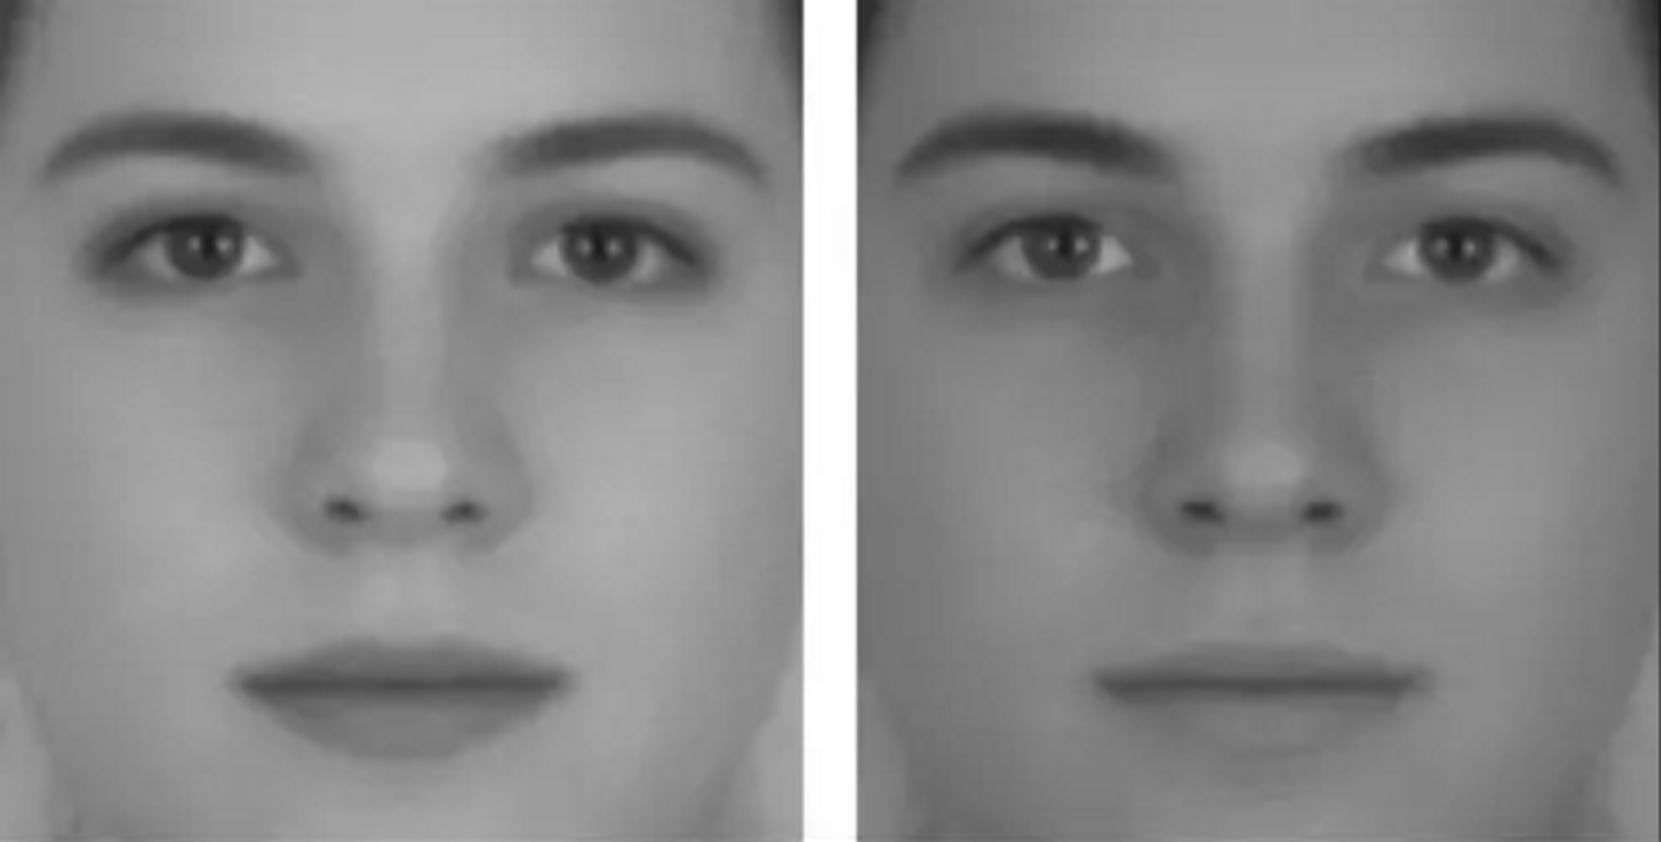 Dve tváre - optické ilúzie, ktoré pracujú s farebnosťou. 